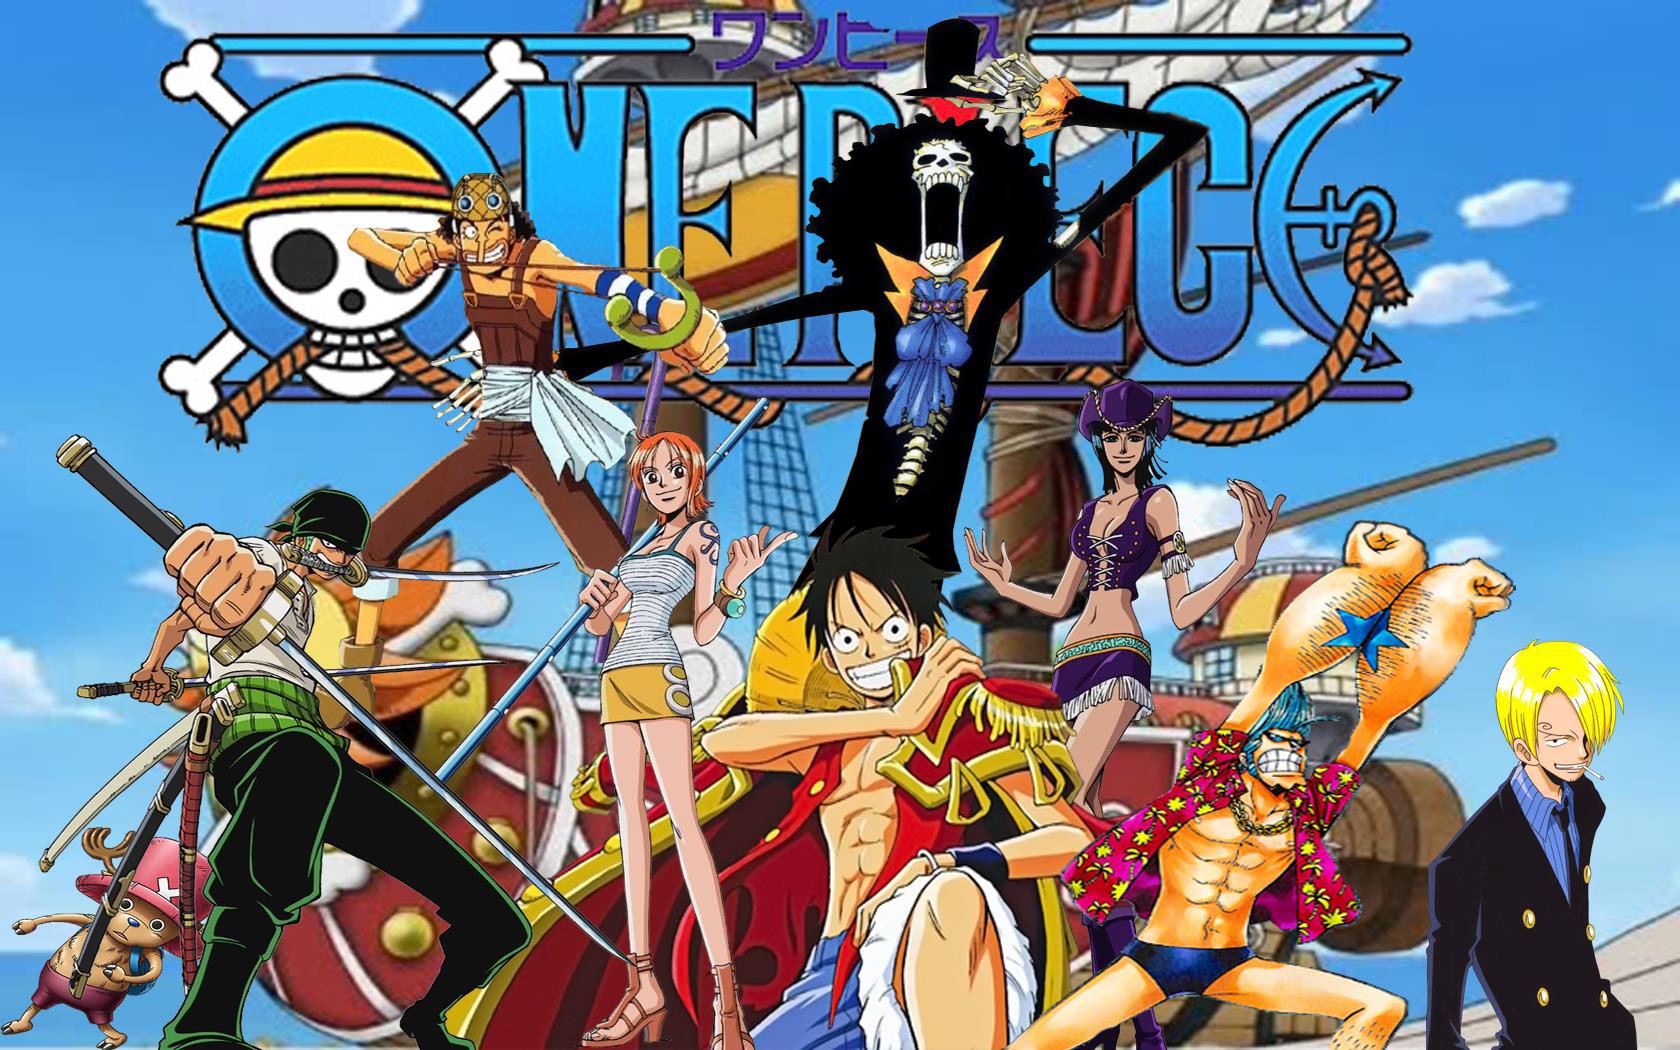 Với One Piece manga, bạn sẽ được trải nghiệm một thế giới tuyệt với đầy màu sắc và những nhân vật tuyệt vời. Khám phá hành trình của Luffy và đội hình của mình trên biển cả và đến với nhiều đảo mới để khám phá những bí mật thú vị. Chào đón bạn đến với thế giới hải tặc đầy mạo hiểm!